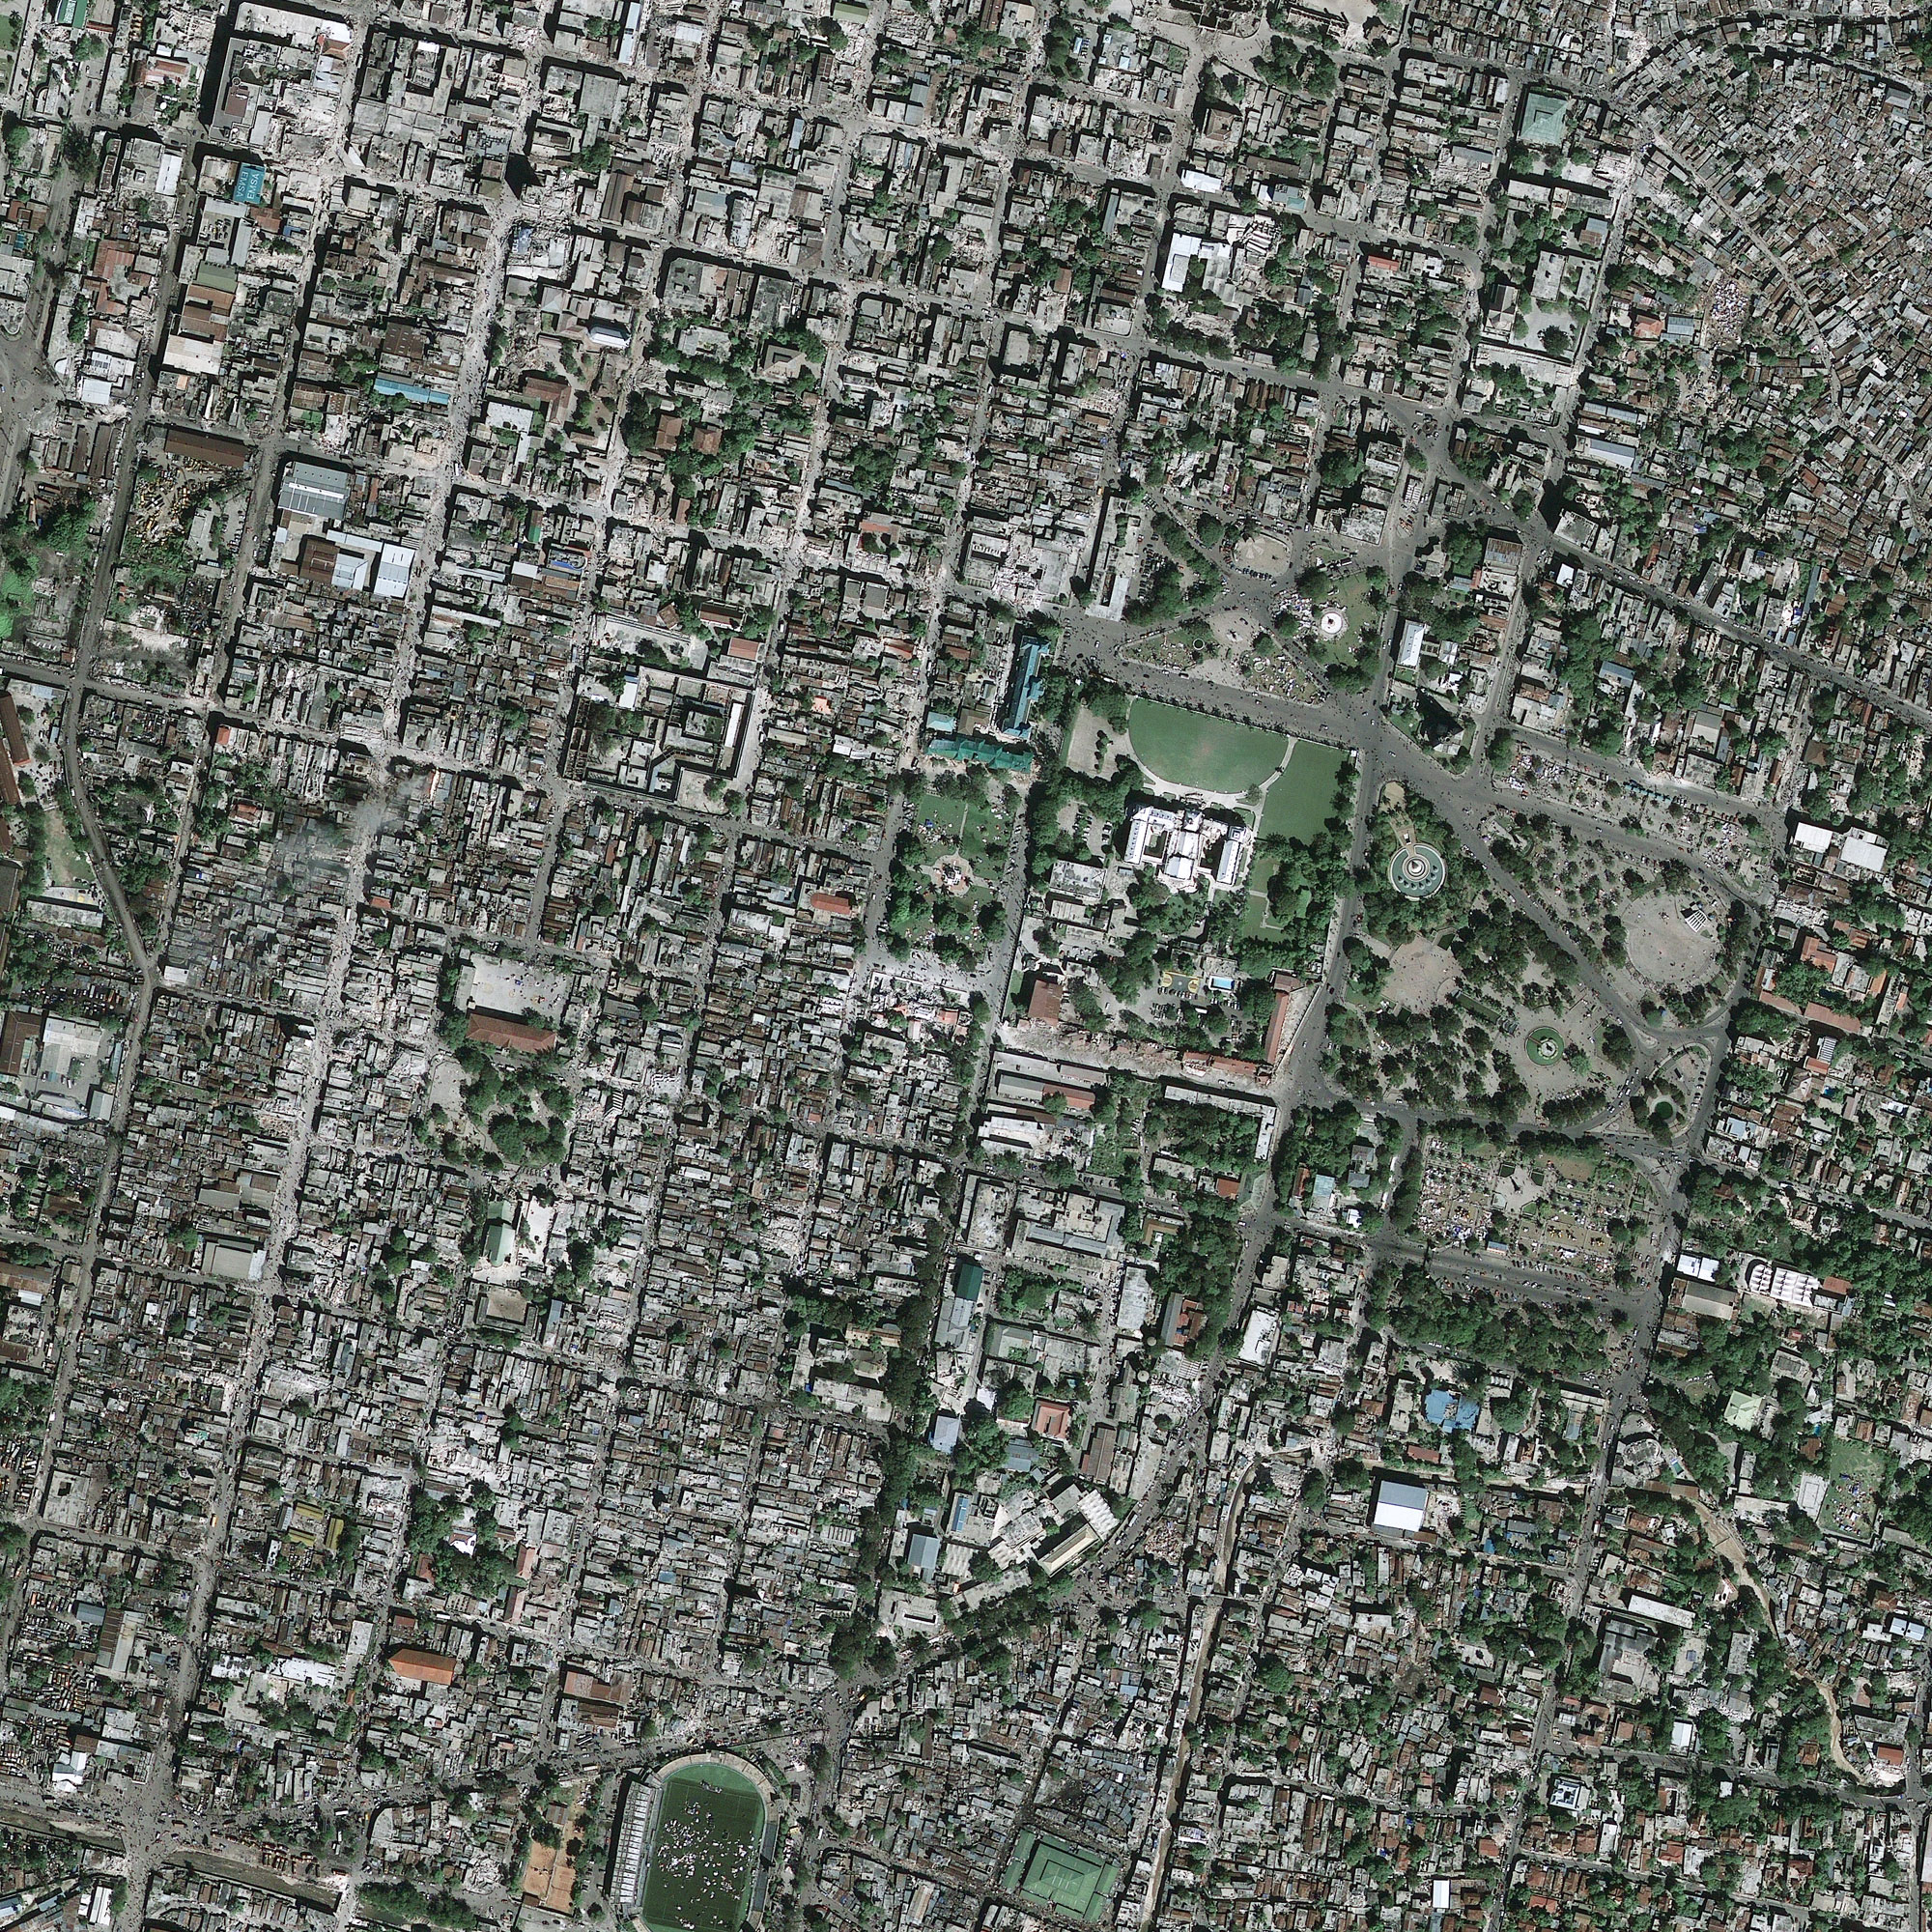 Haïti - Port-au-Prince après le séisme (13 janvier 2010)